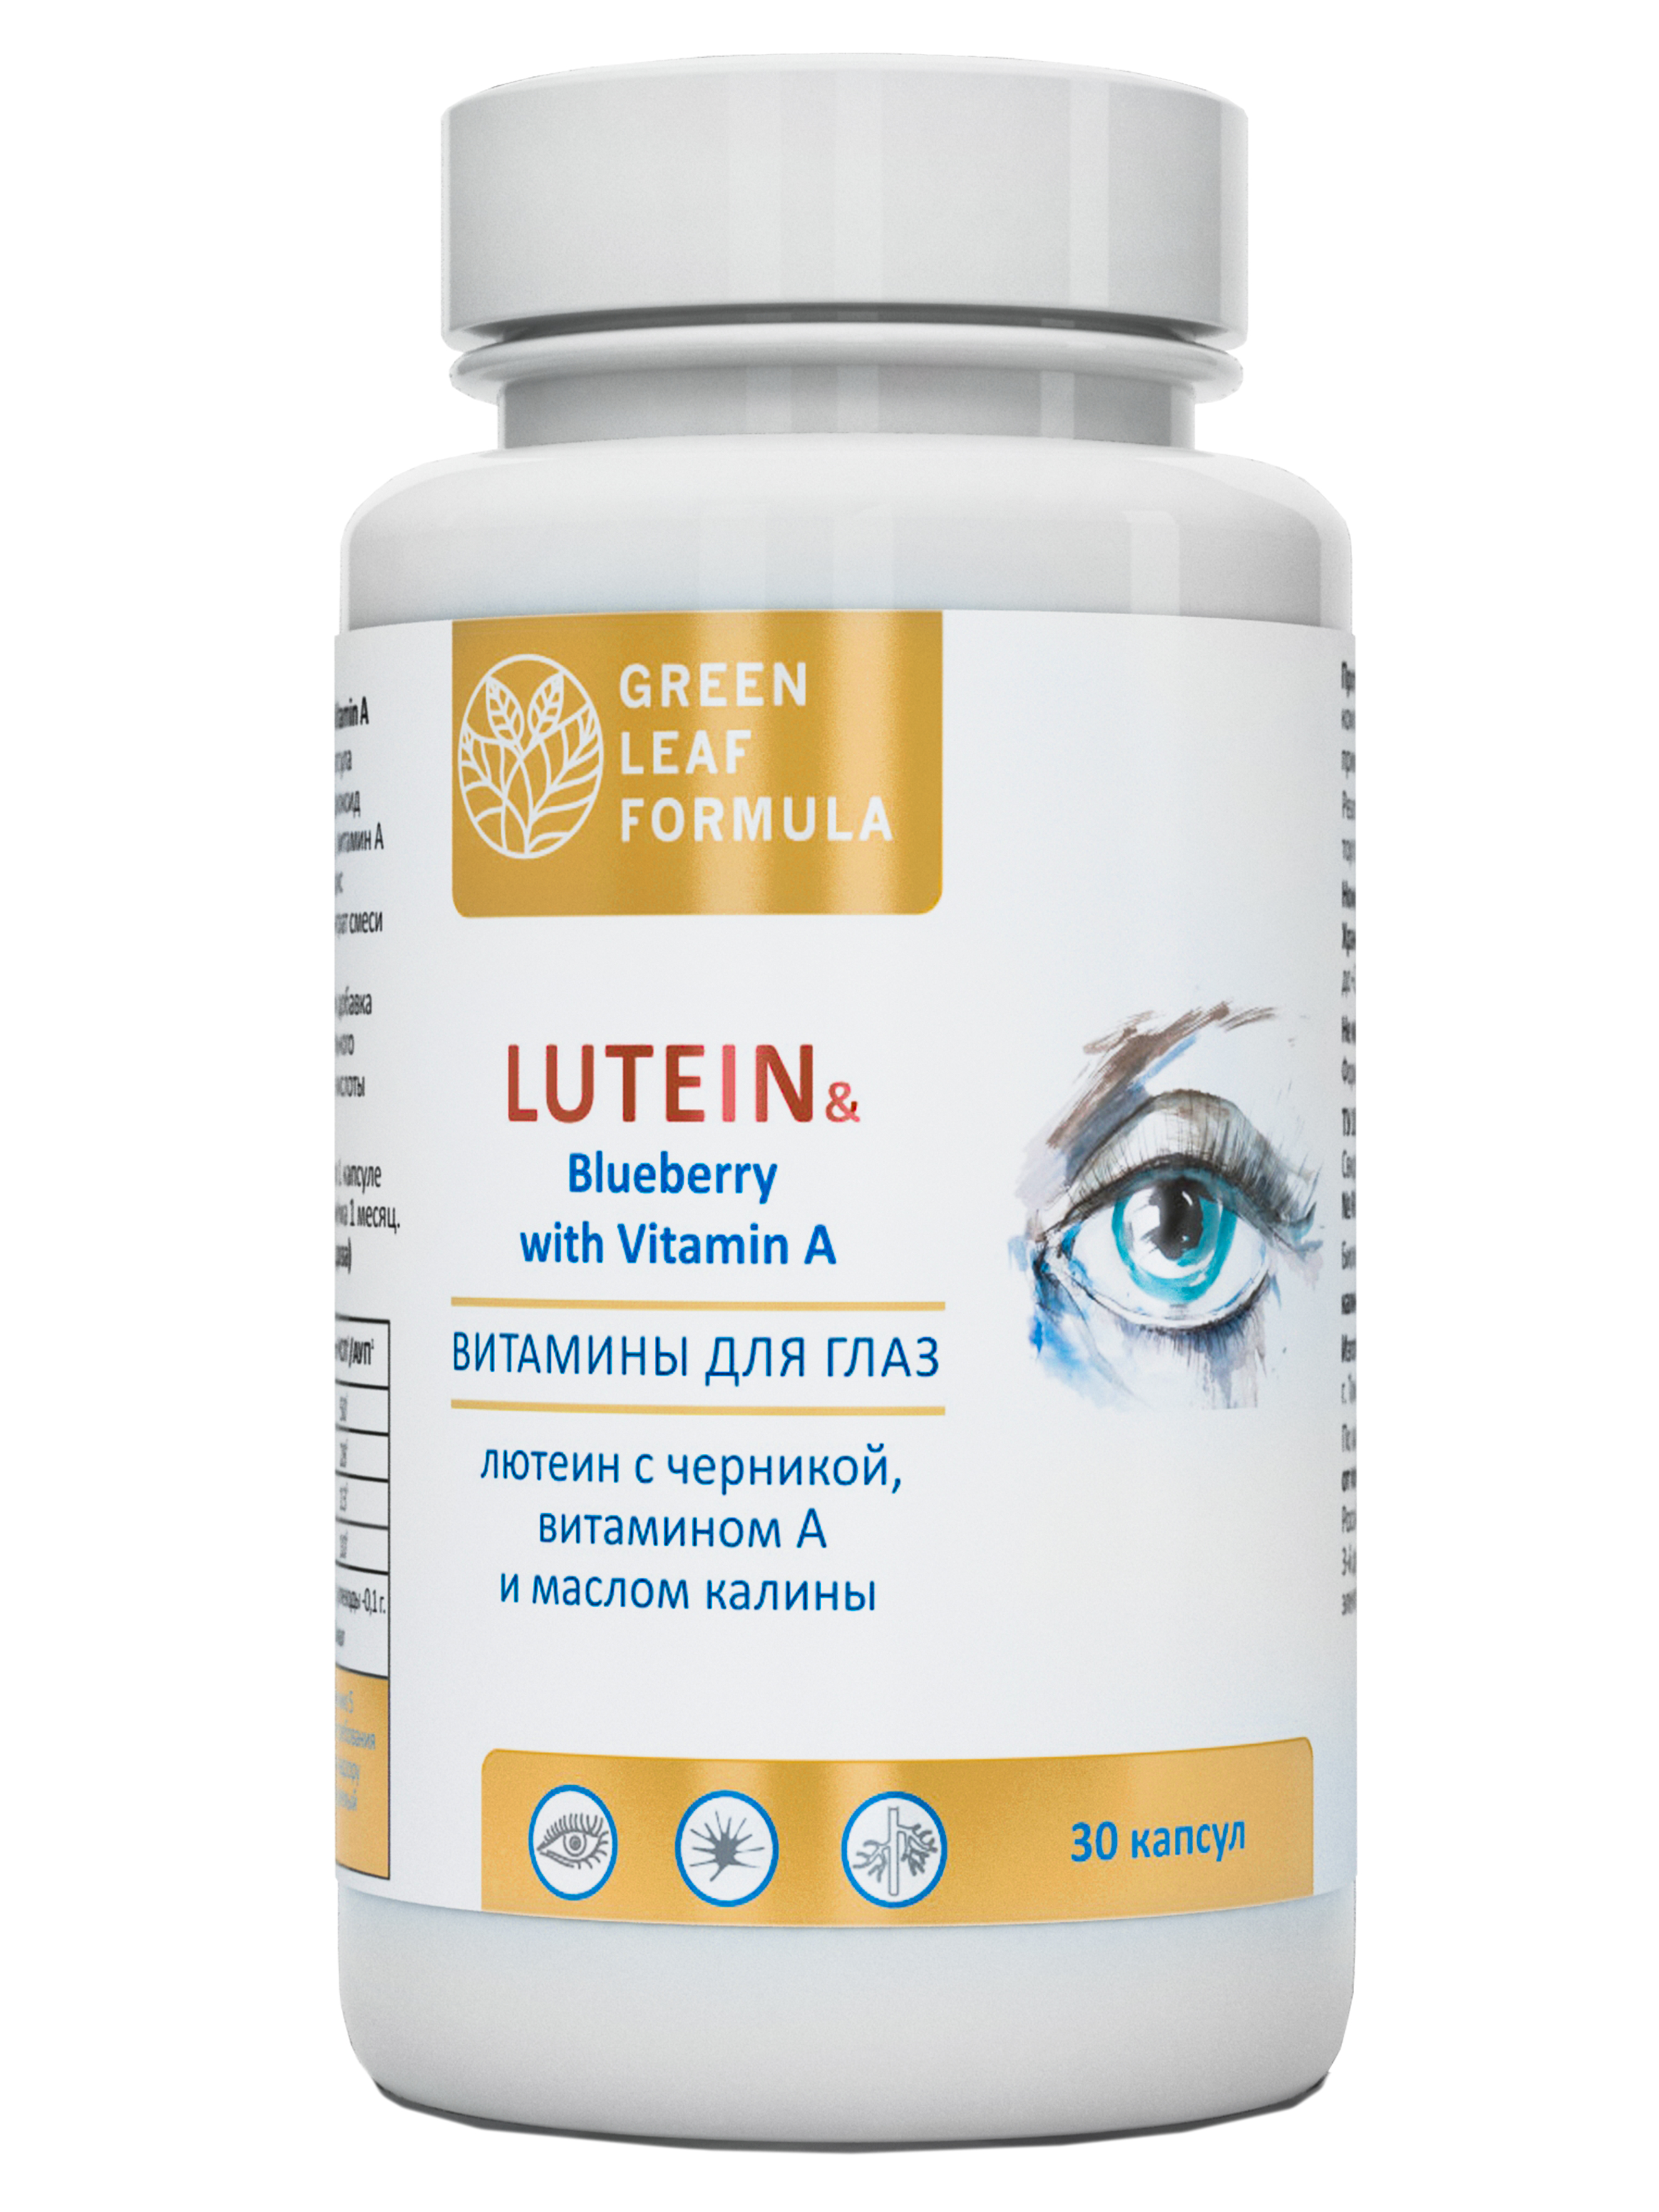 Витамины для глаз с лютеином Green Leaf Formula черника для глаз 790 мг капсулы 30 шт.